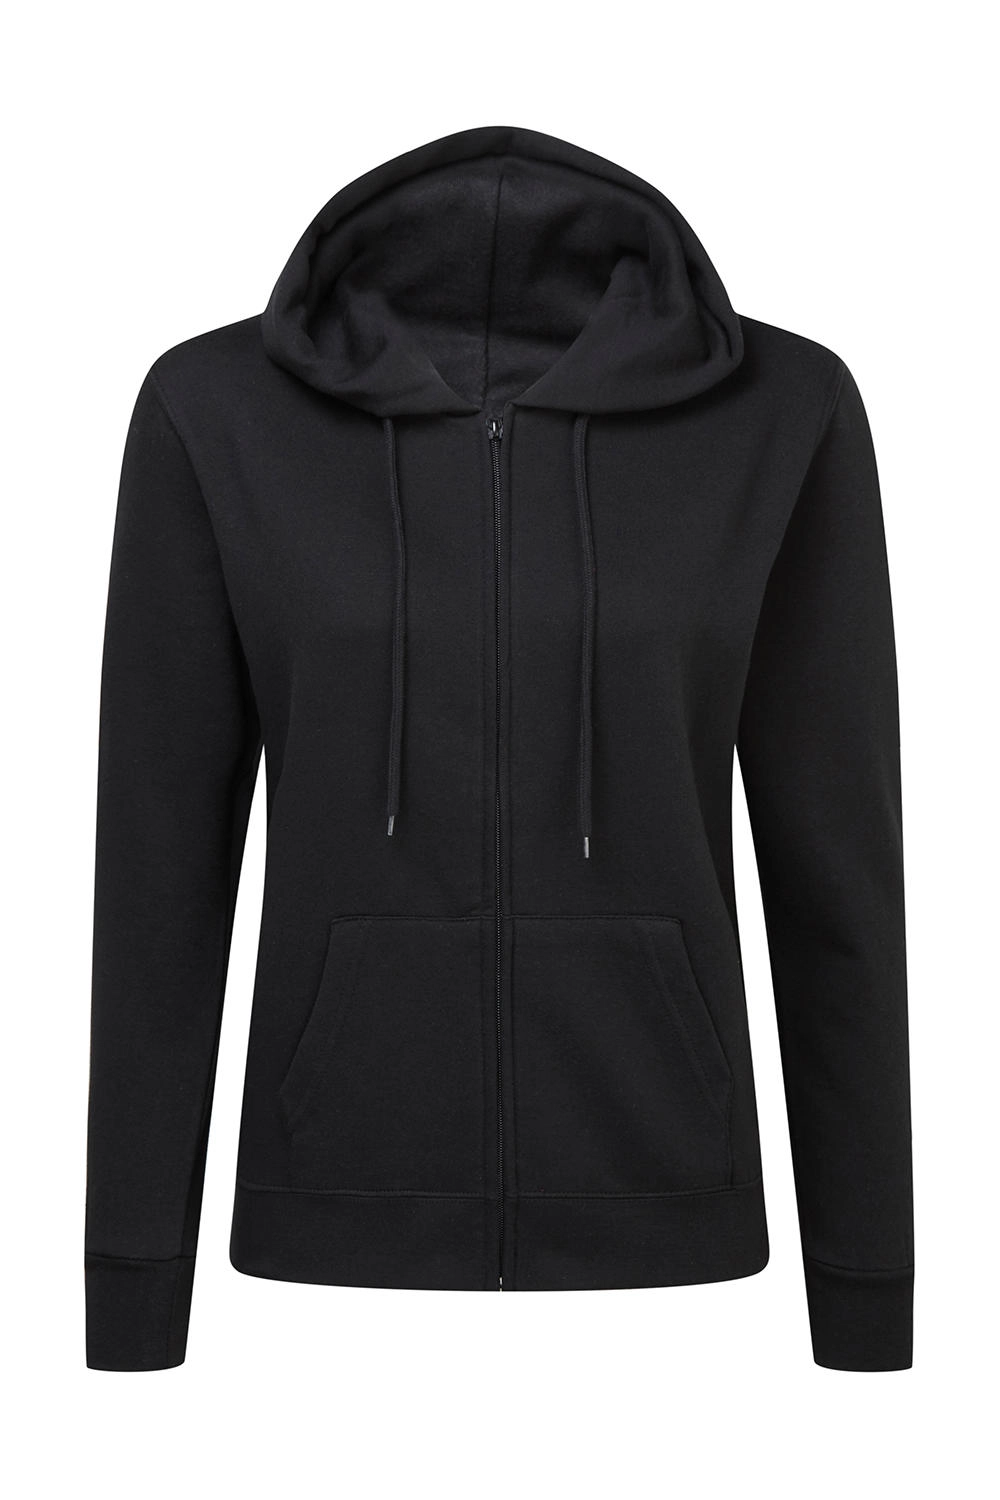 Hooded Full Zip Women zum Besticken und Bedrucken in der Farbe Black mit Ihren Logo, Schriftzug oder Motiv.